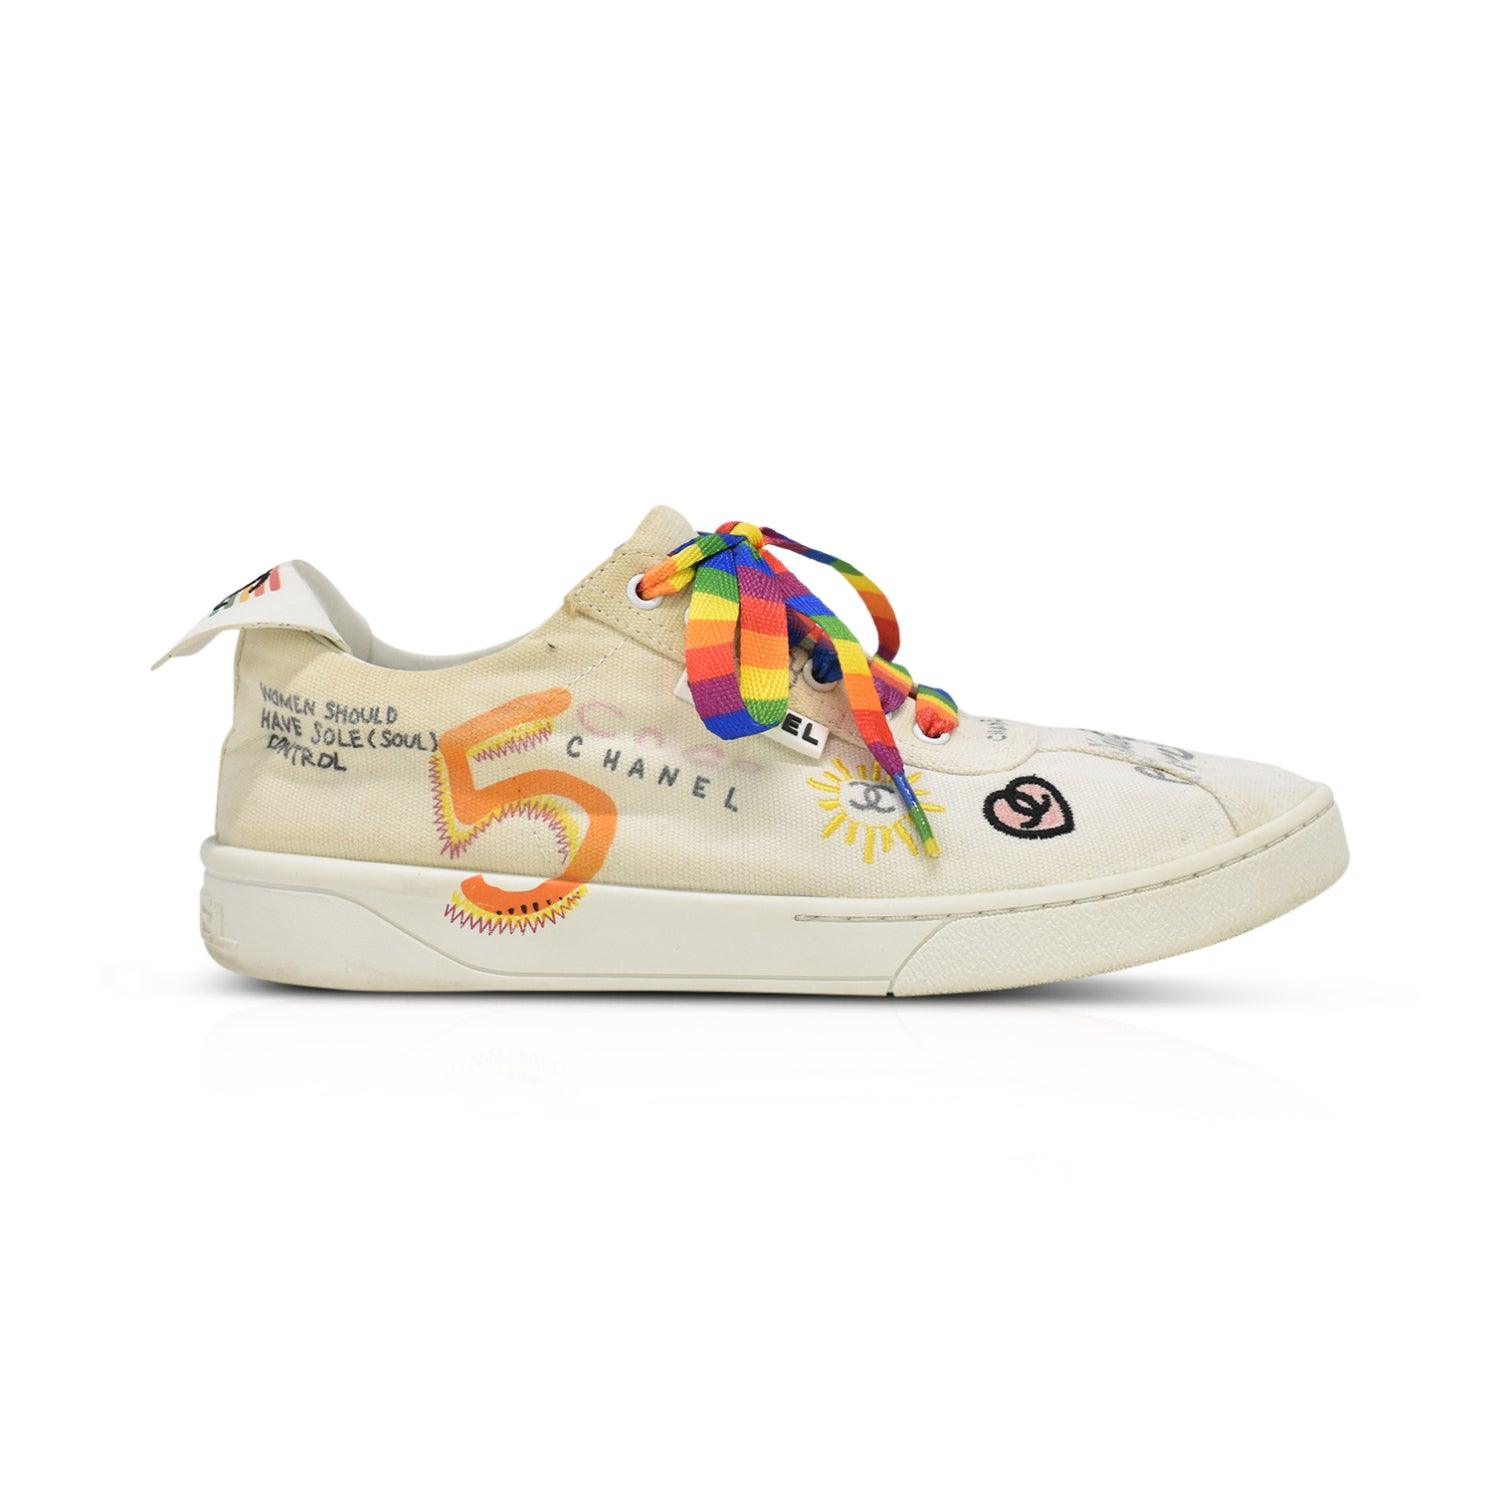 Chanel x Pharrell Low-Top Sneakers - Women's 37